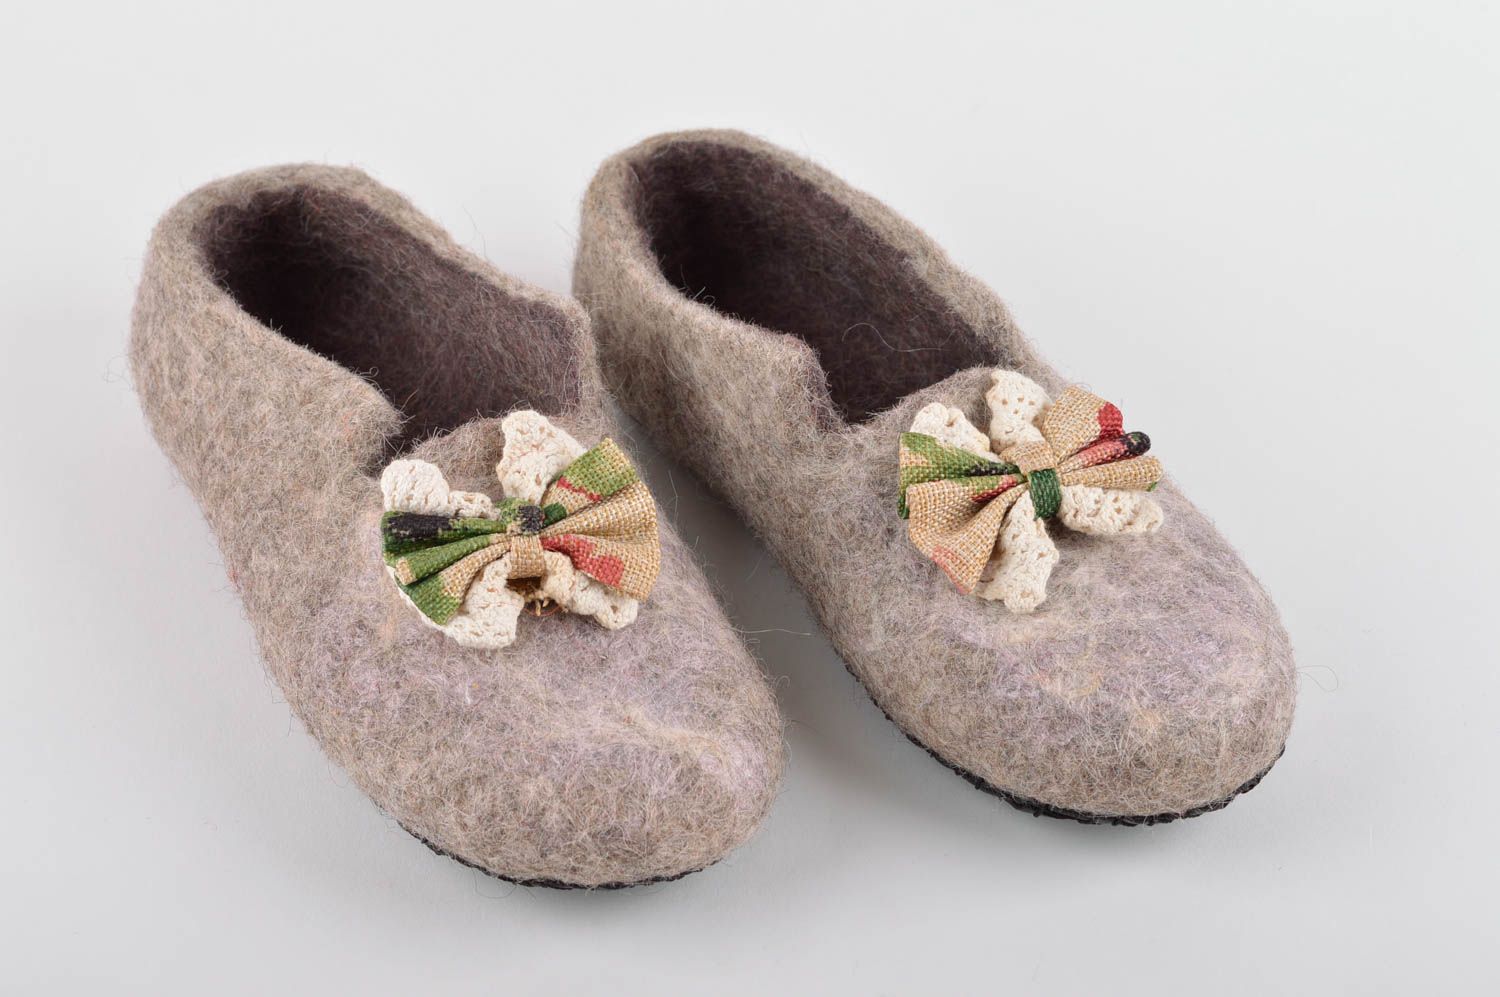 Handmade gefilzte Pantoffeln schöne Hausschuhe warme Damen Hausschuhe grau foto 2